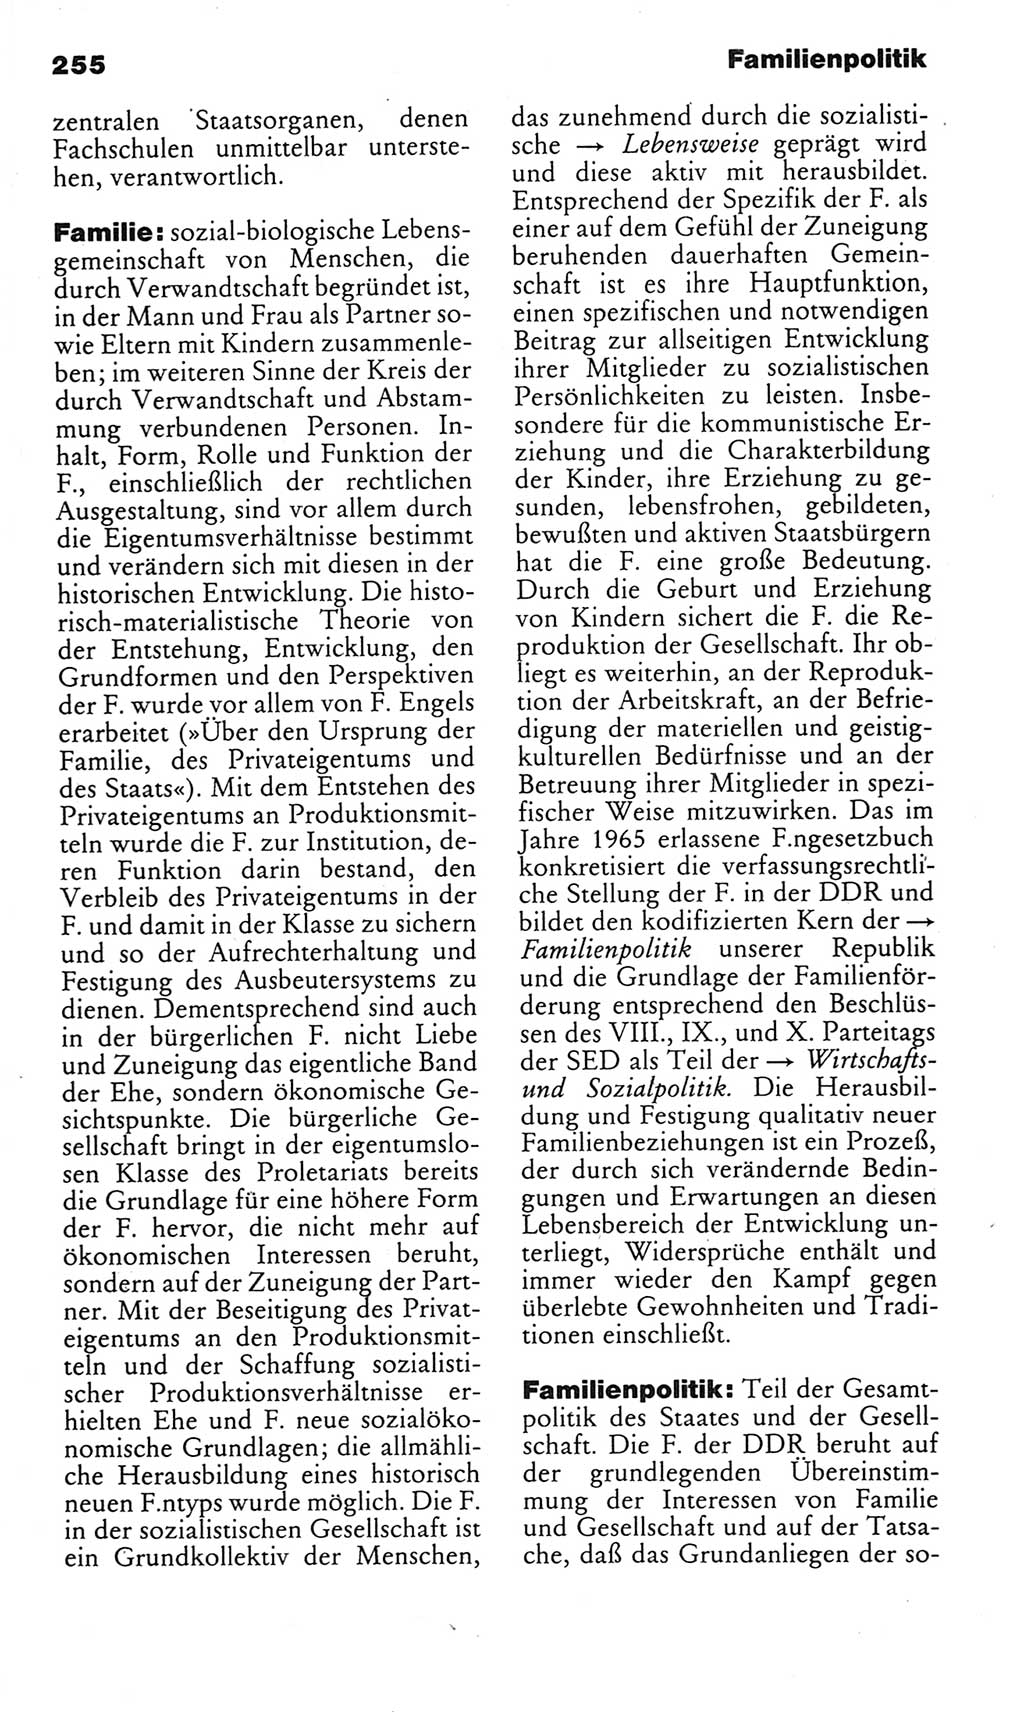 Kleines politisches Wörterbuch [Deutsche Demokratische Republik (DDR)] 1985, Seite 255 (Kl. pol. Wb. DDR 1985, S. 255)